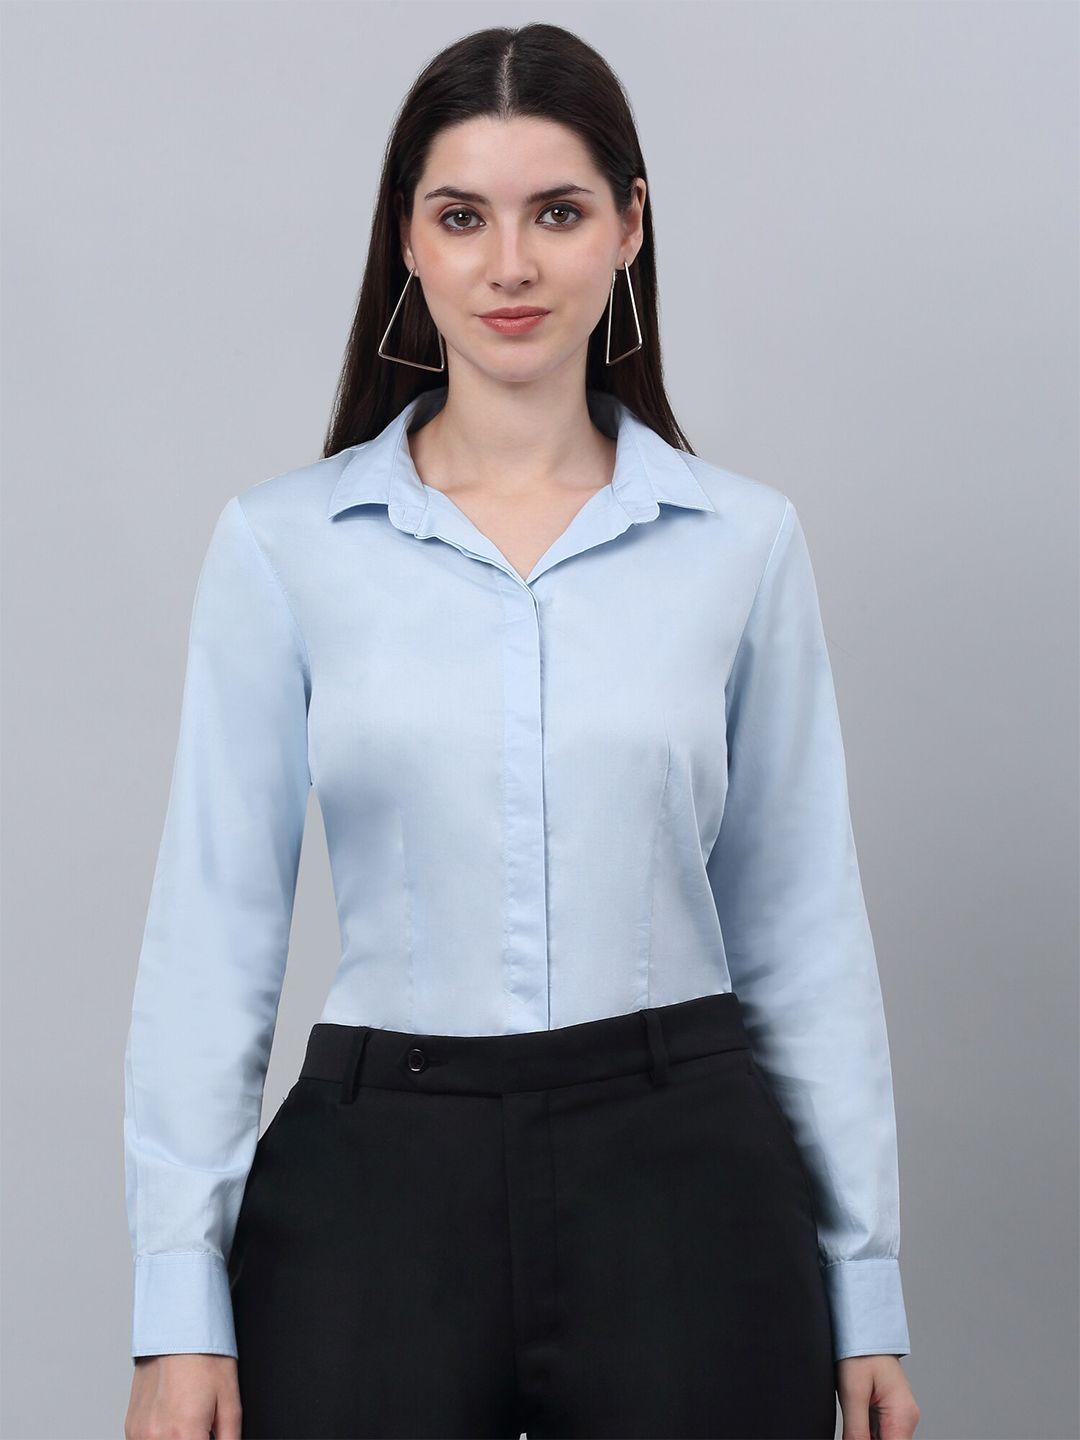 cantabil women blue comfort opaque formal shirt